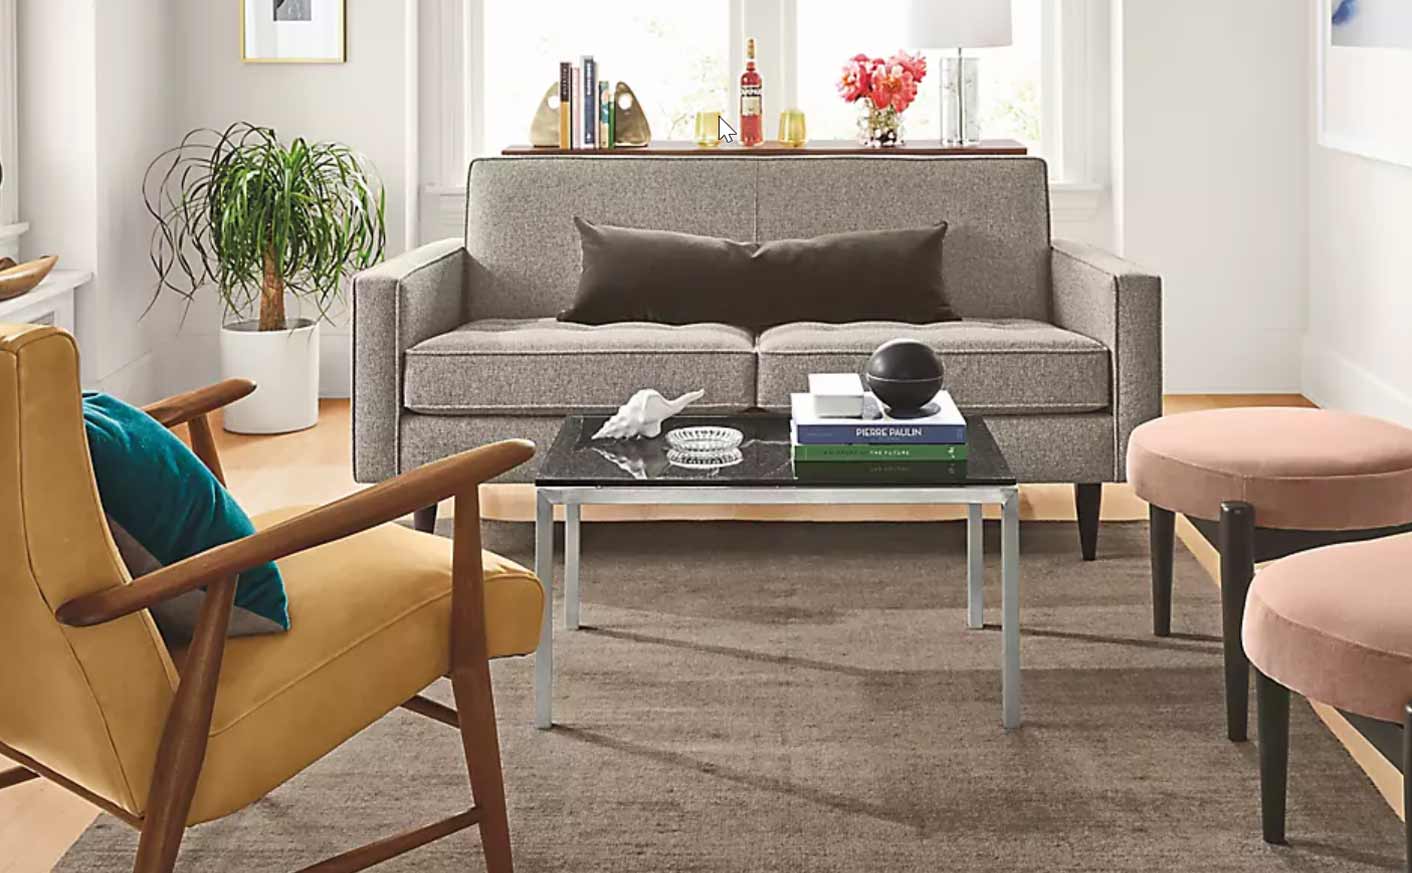 مبلمان-مناسب-برای-فضاهای-کوچک---1 - suitable furniture for small spaces